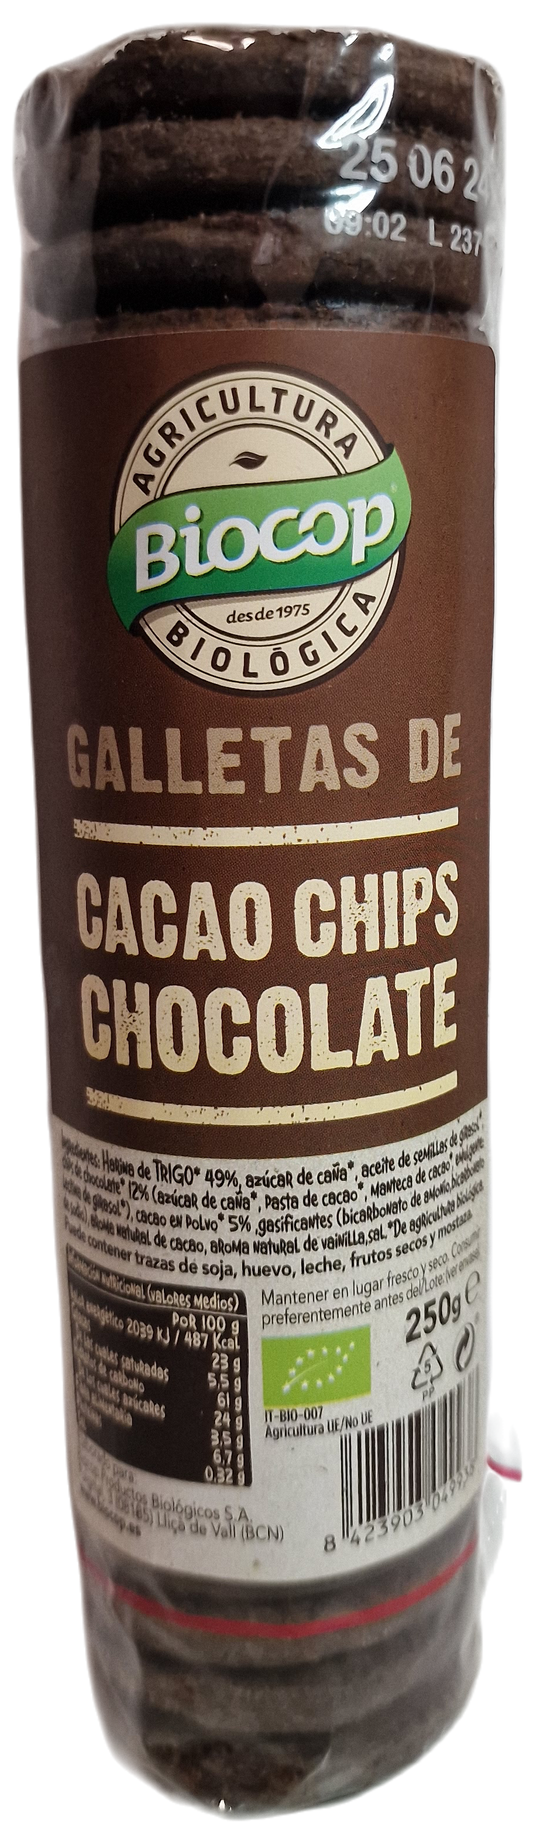 Galletas de cacao chips chocolate 250 gr